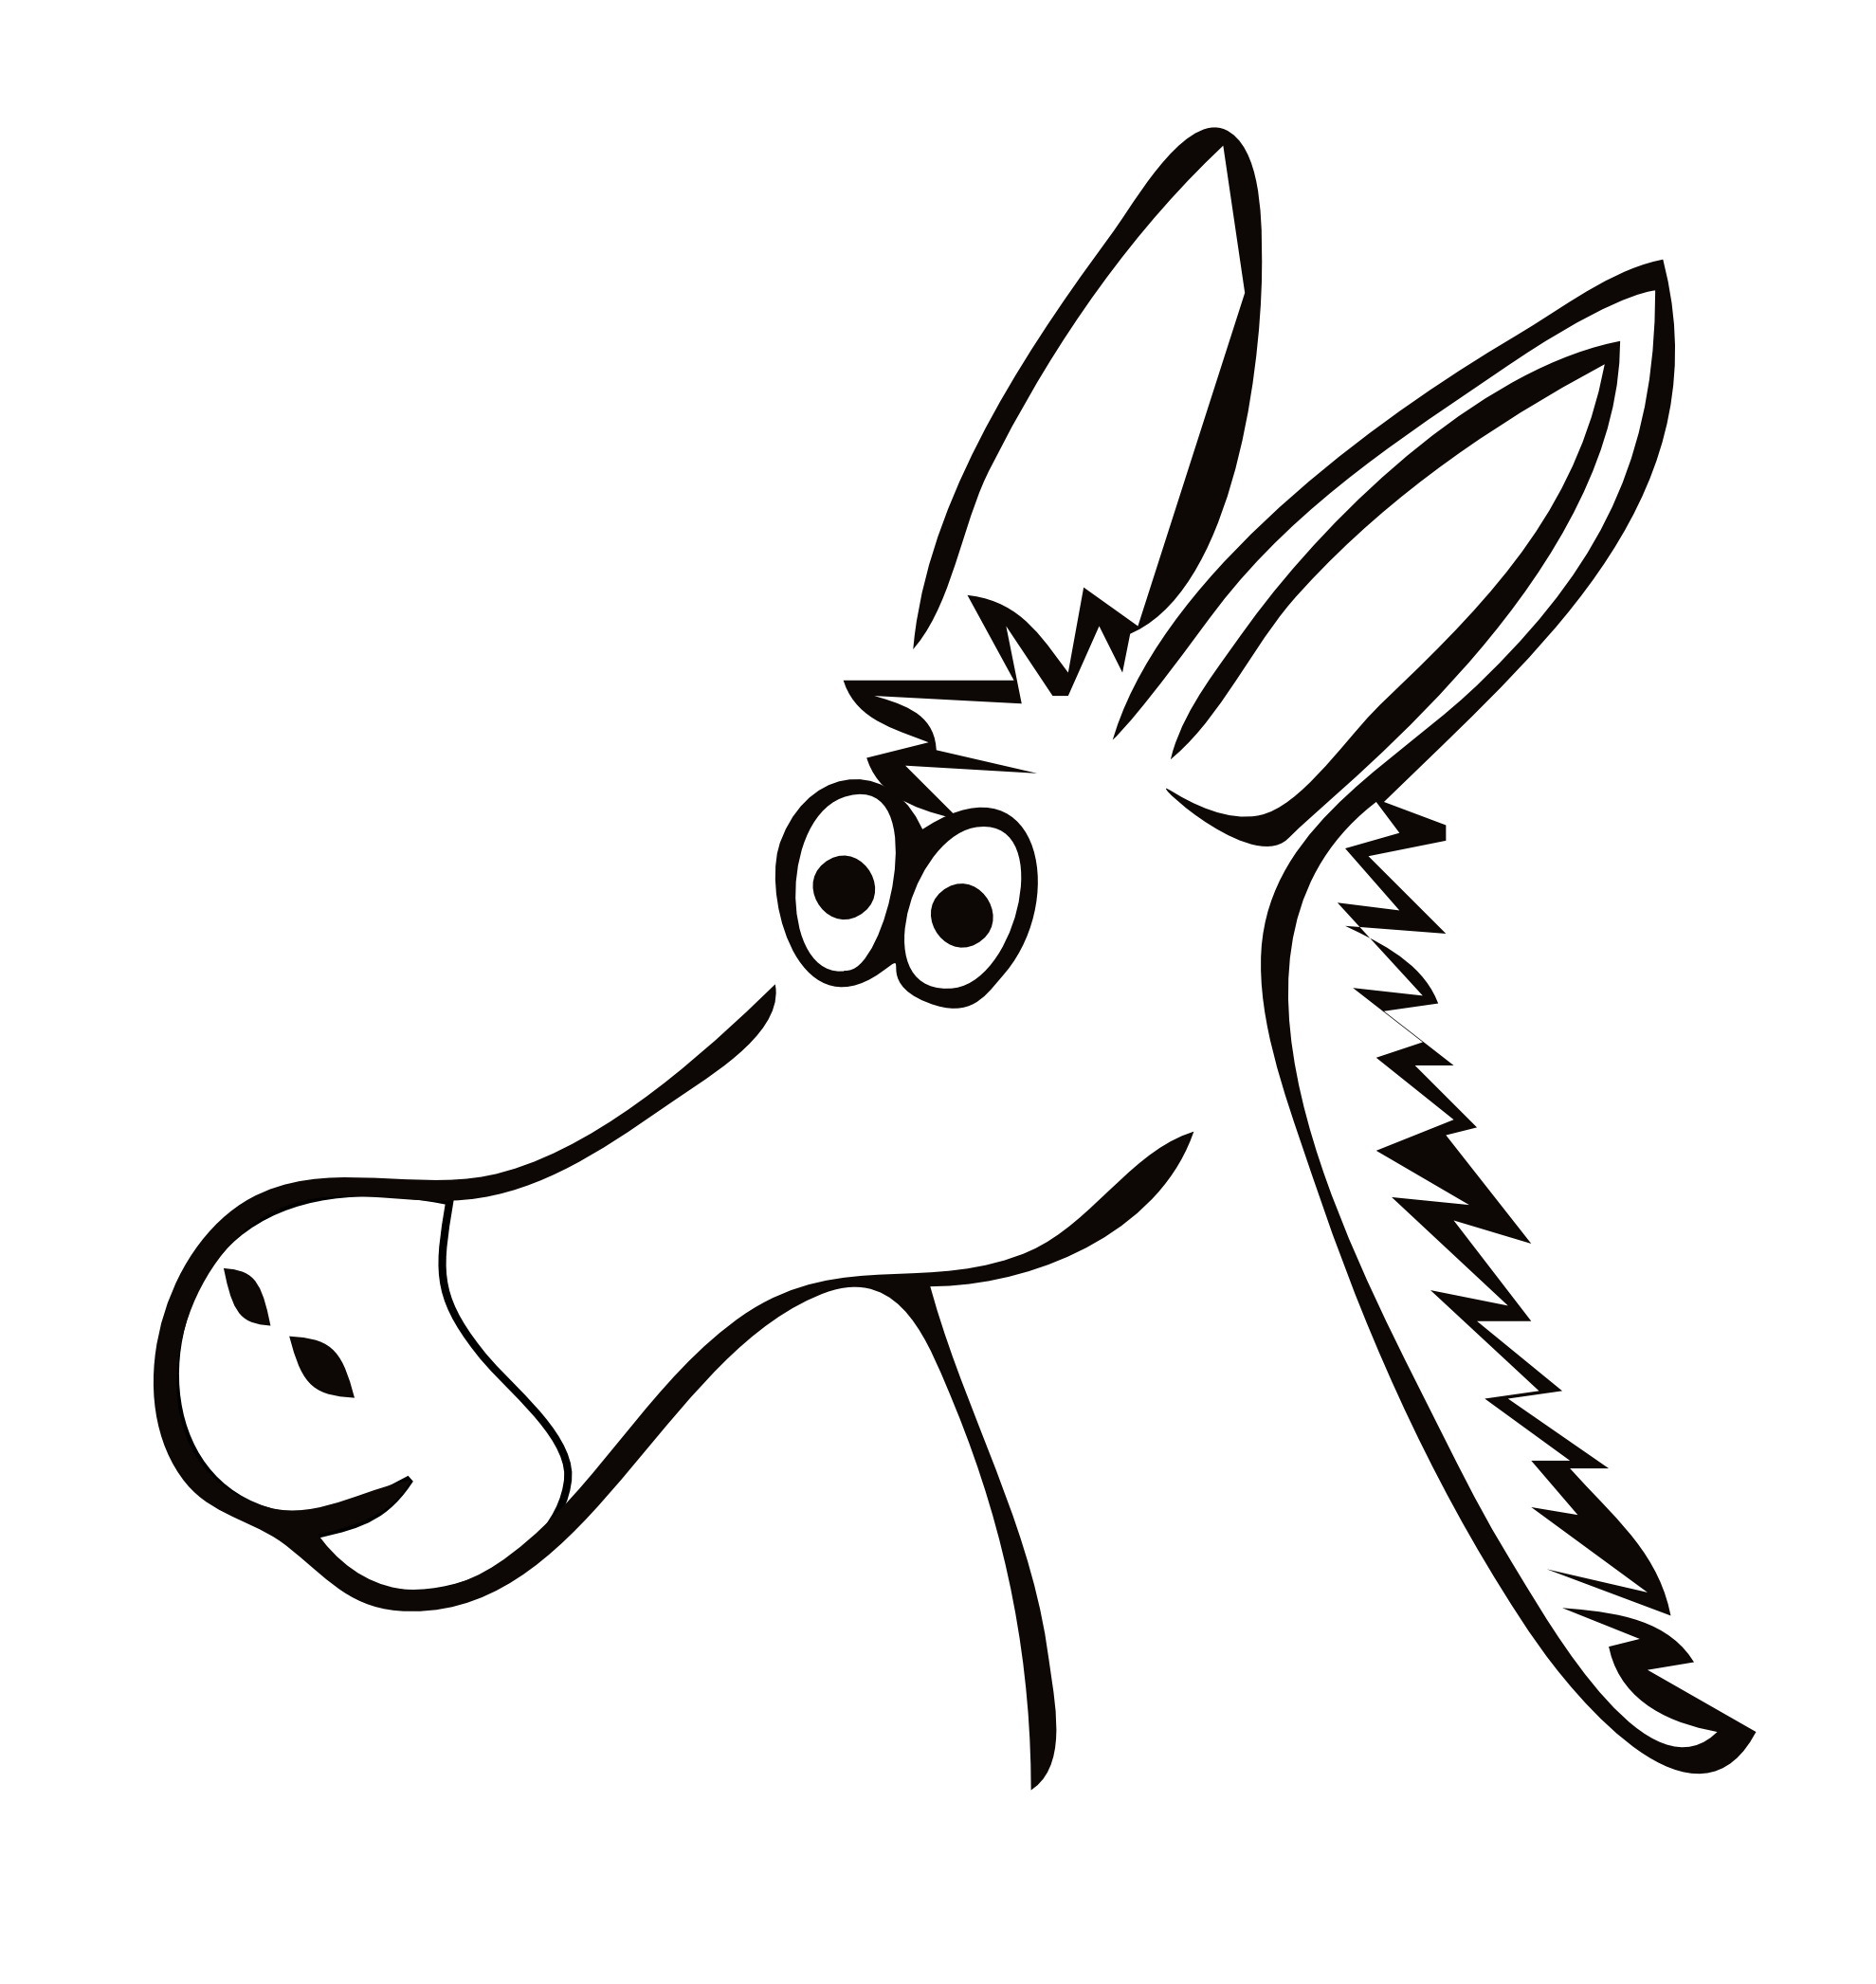 Donkey clipart vector